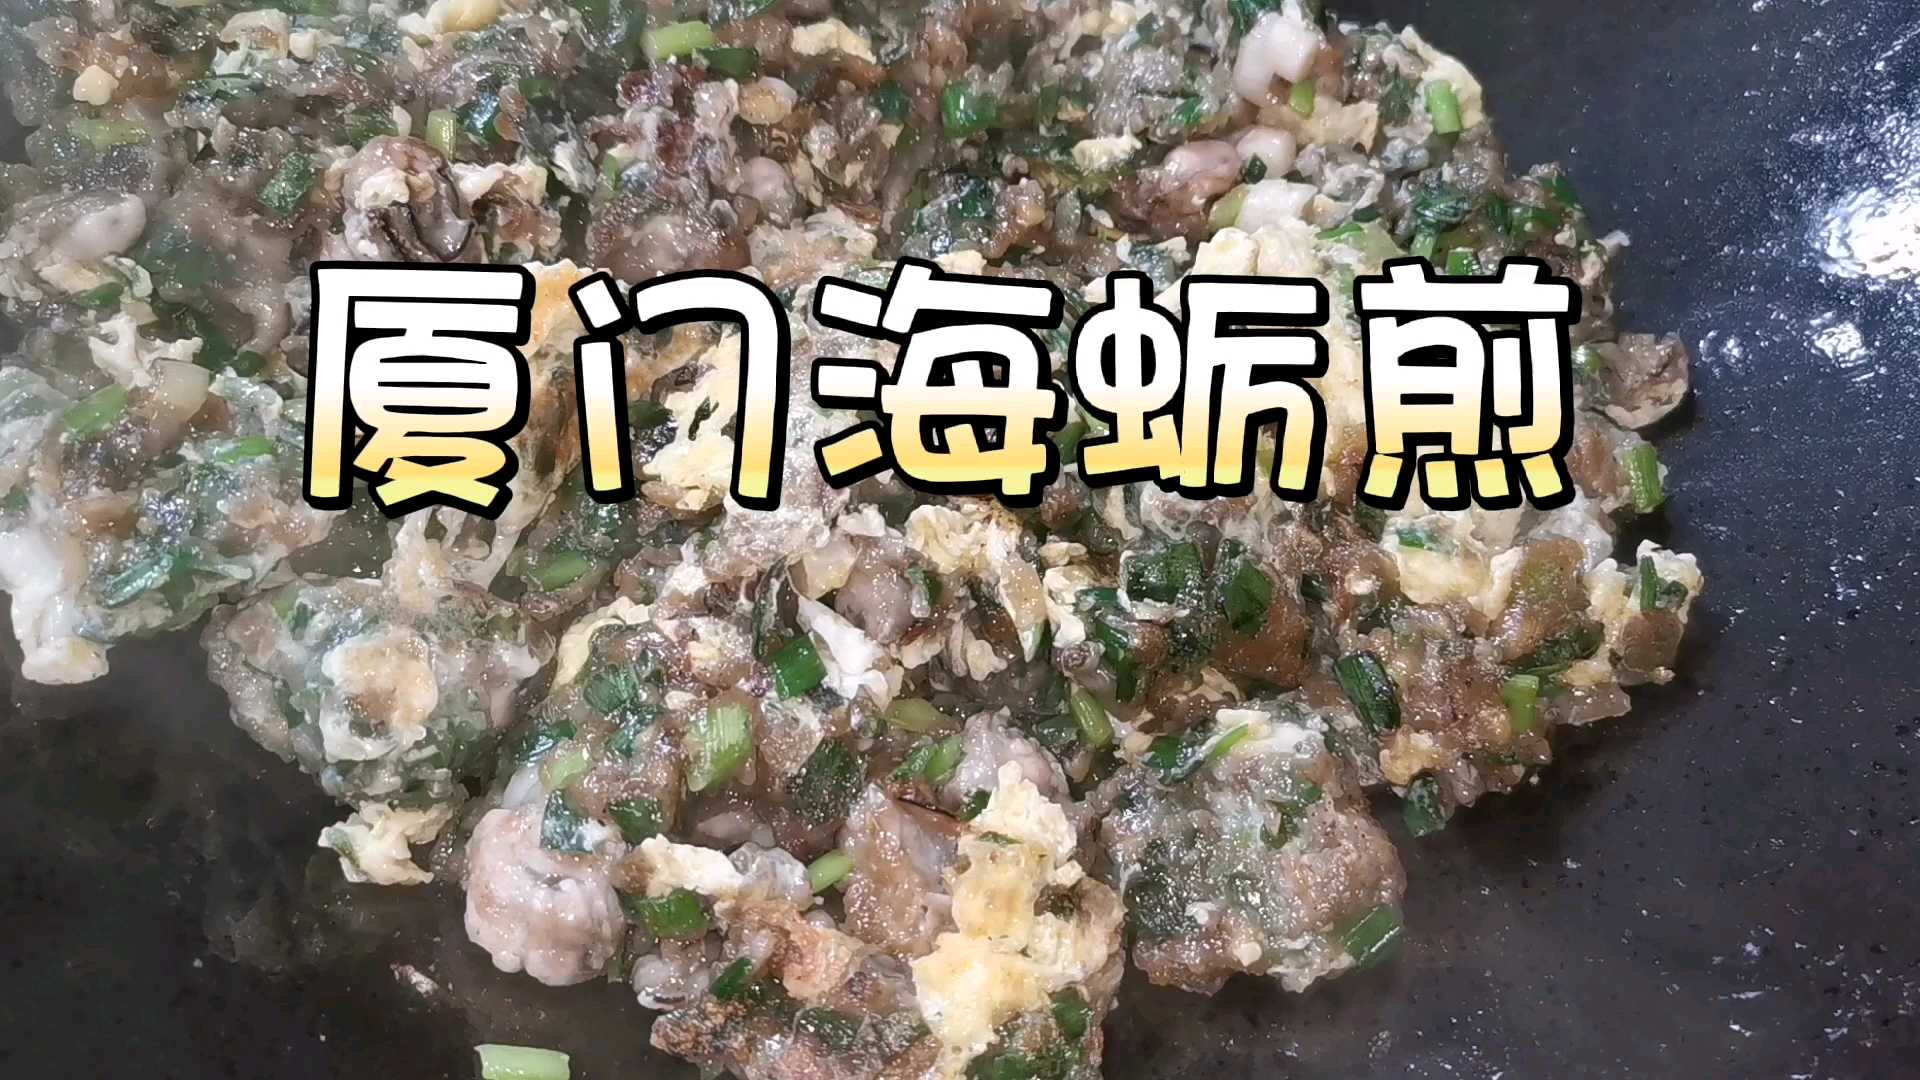 海蛎煎，又名蚵仔煎，是闽南及台湾一带的特色下酒菜，营养丰富、美味可口。 海蛎煎，选用海蛎中的上品“珠